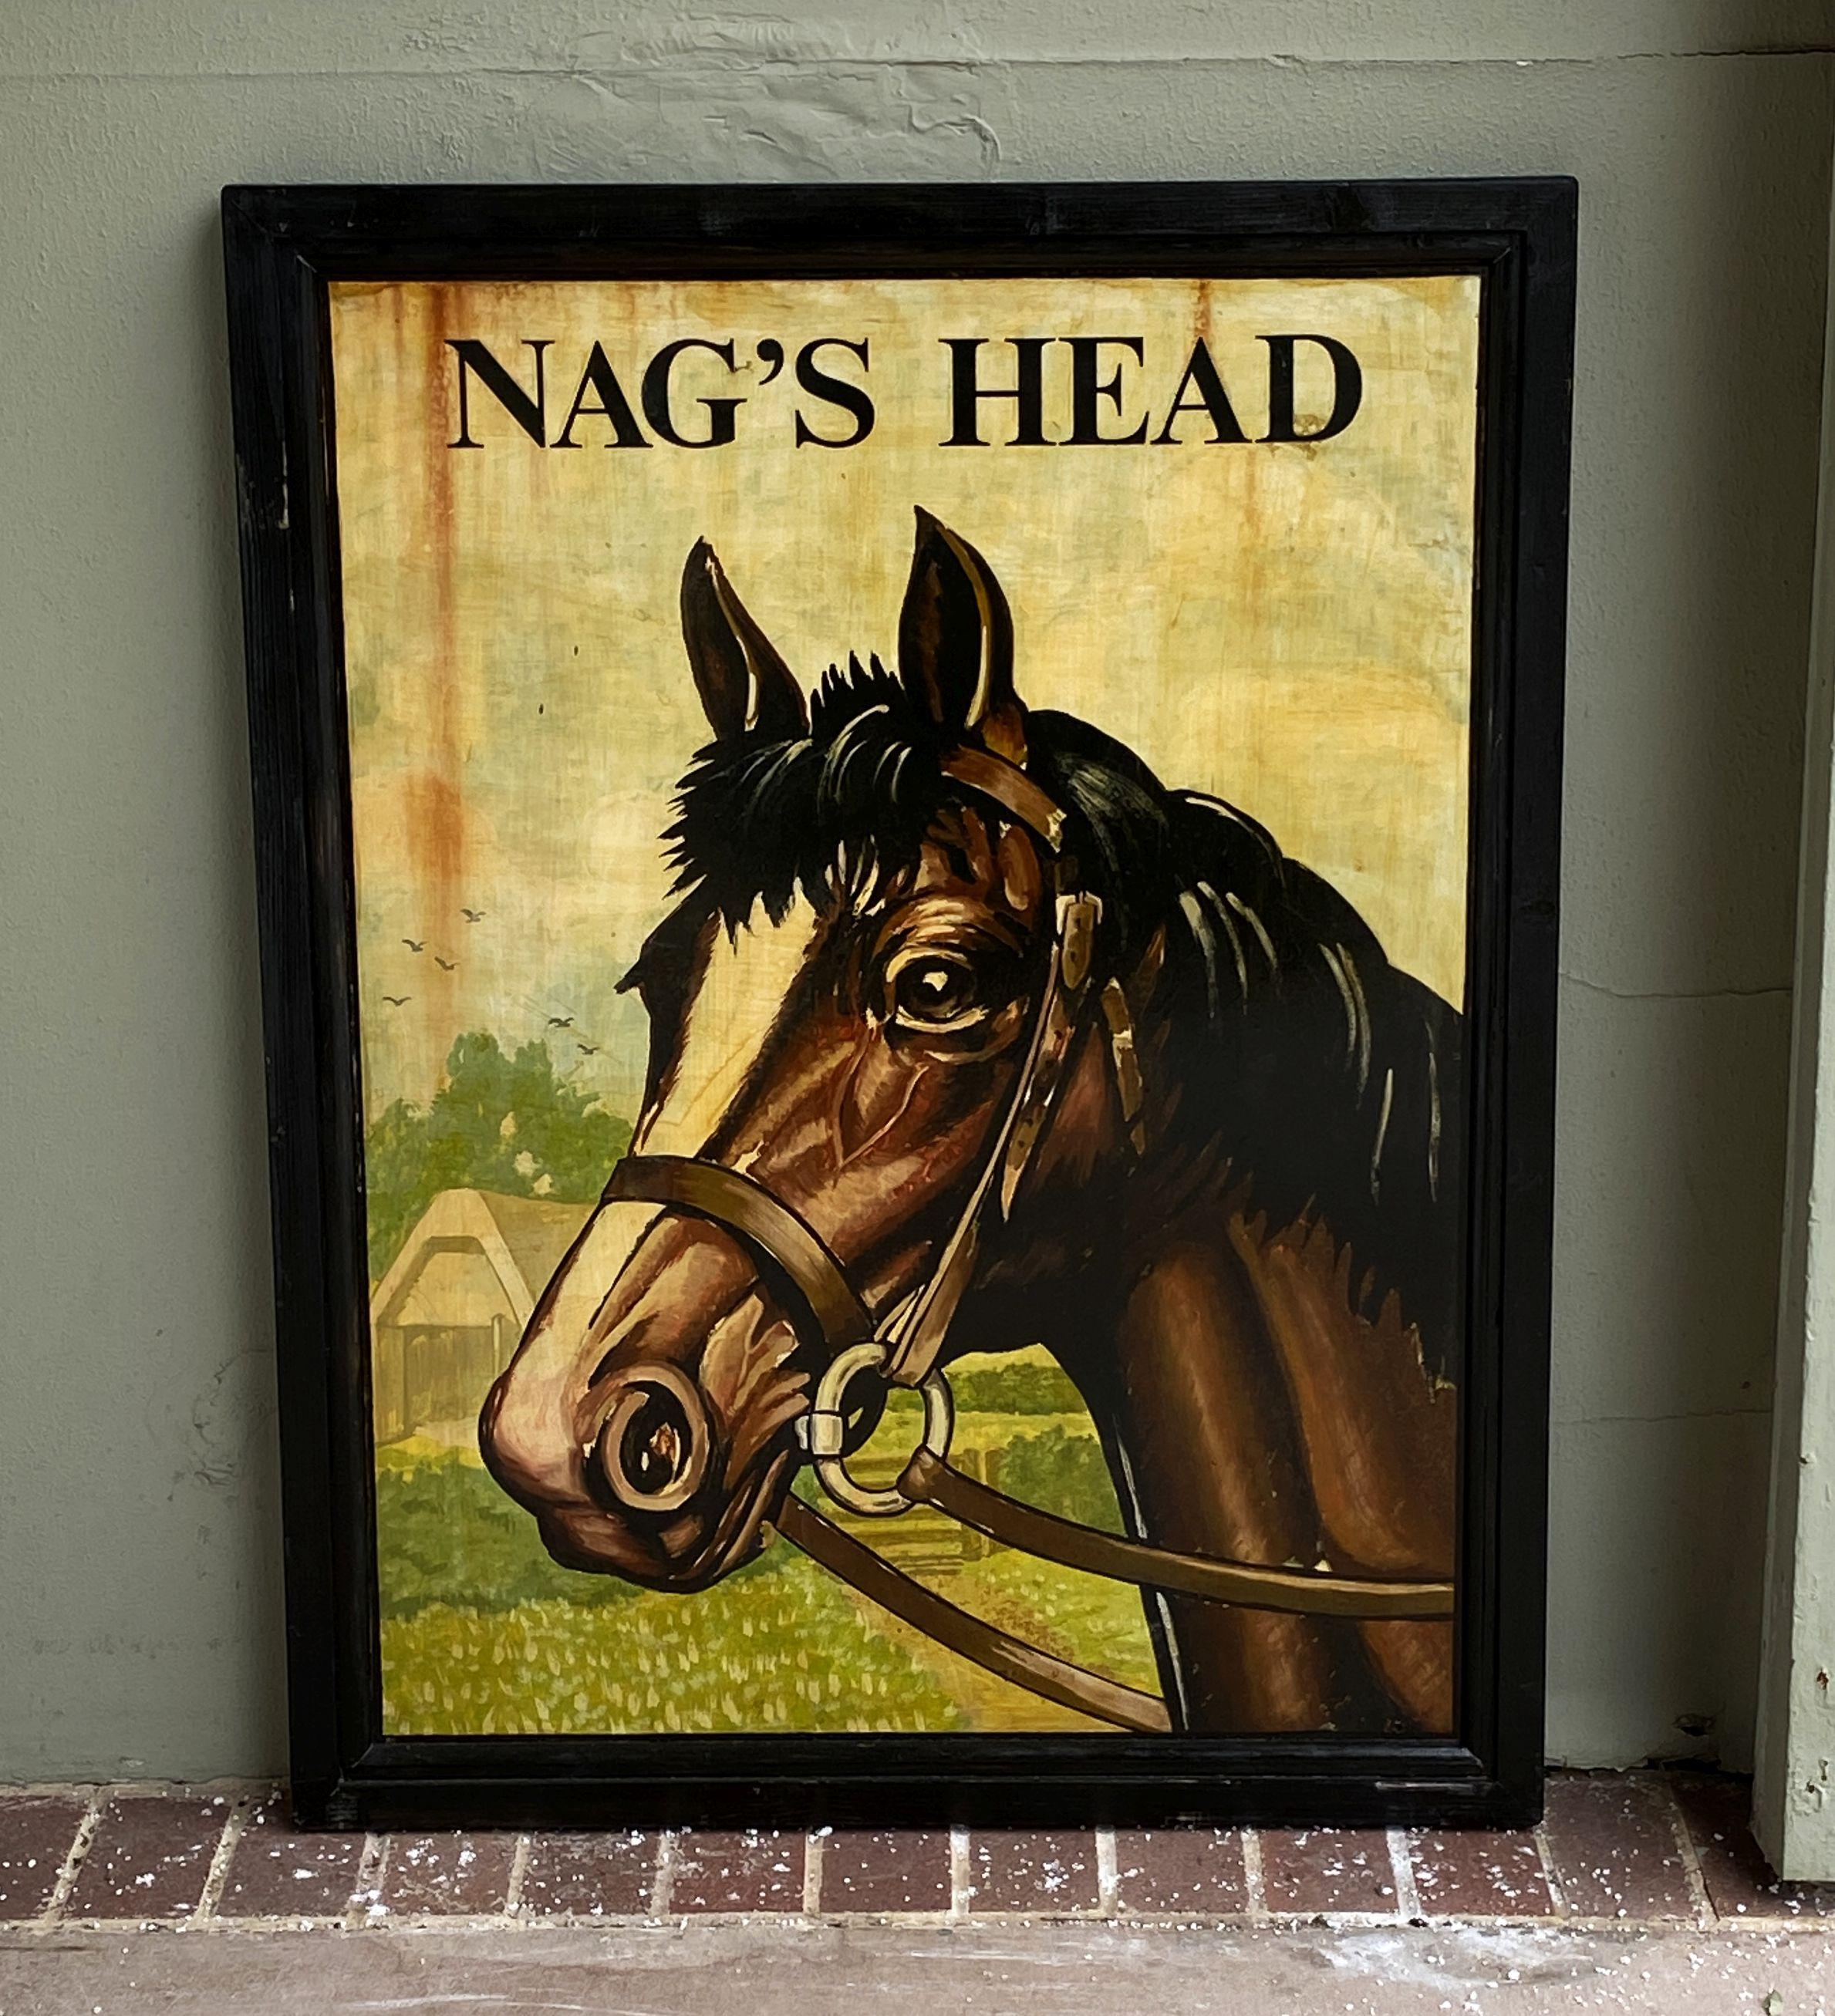 Authentique enseigne de pub anglais (recto-verso) représentant une tête de cheval bridée intitulée : Nag's Head.

Un très bel exemple d'œuvre d'art publicitaire vintage, prête à être exposée.

